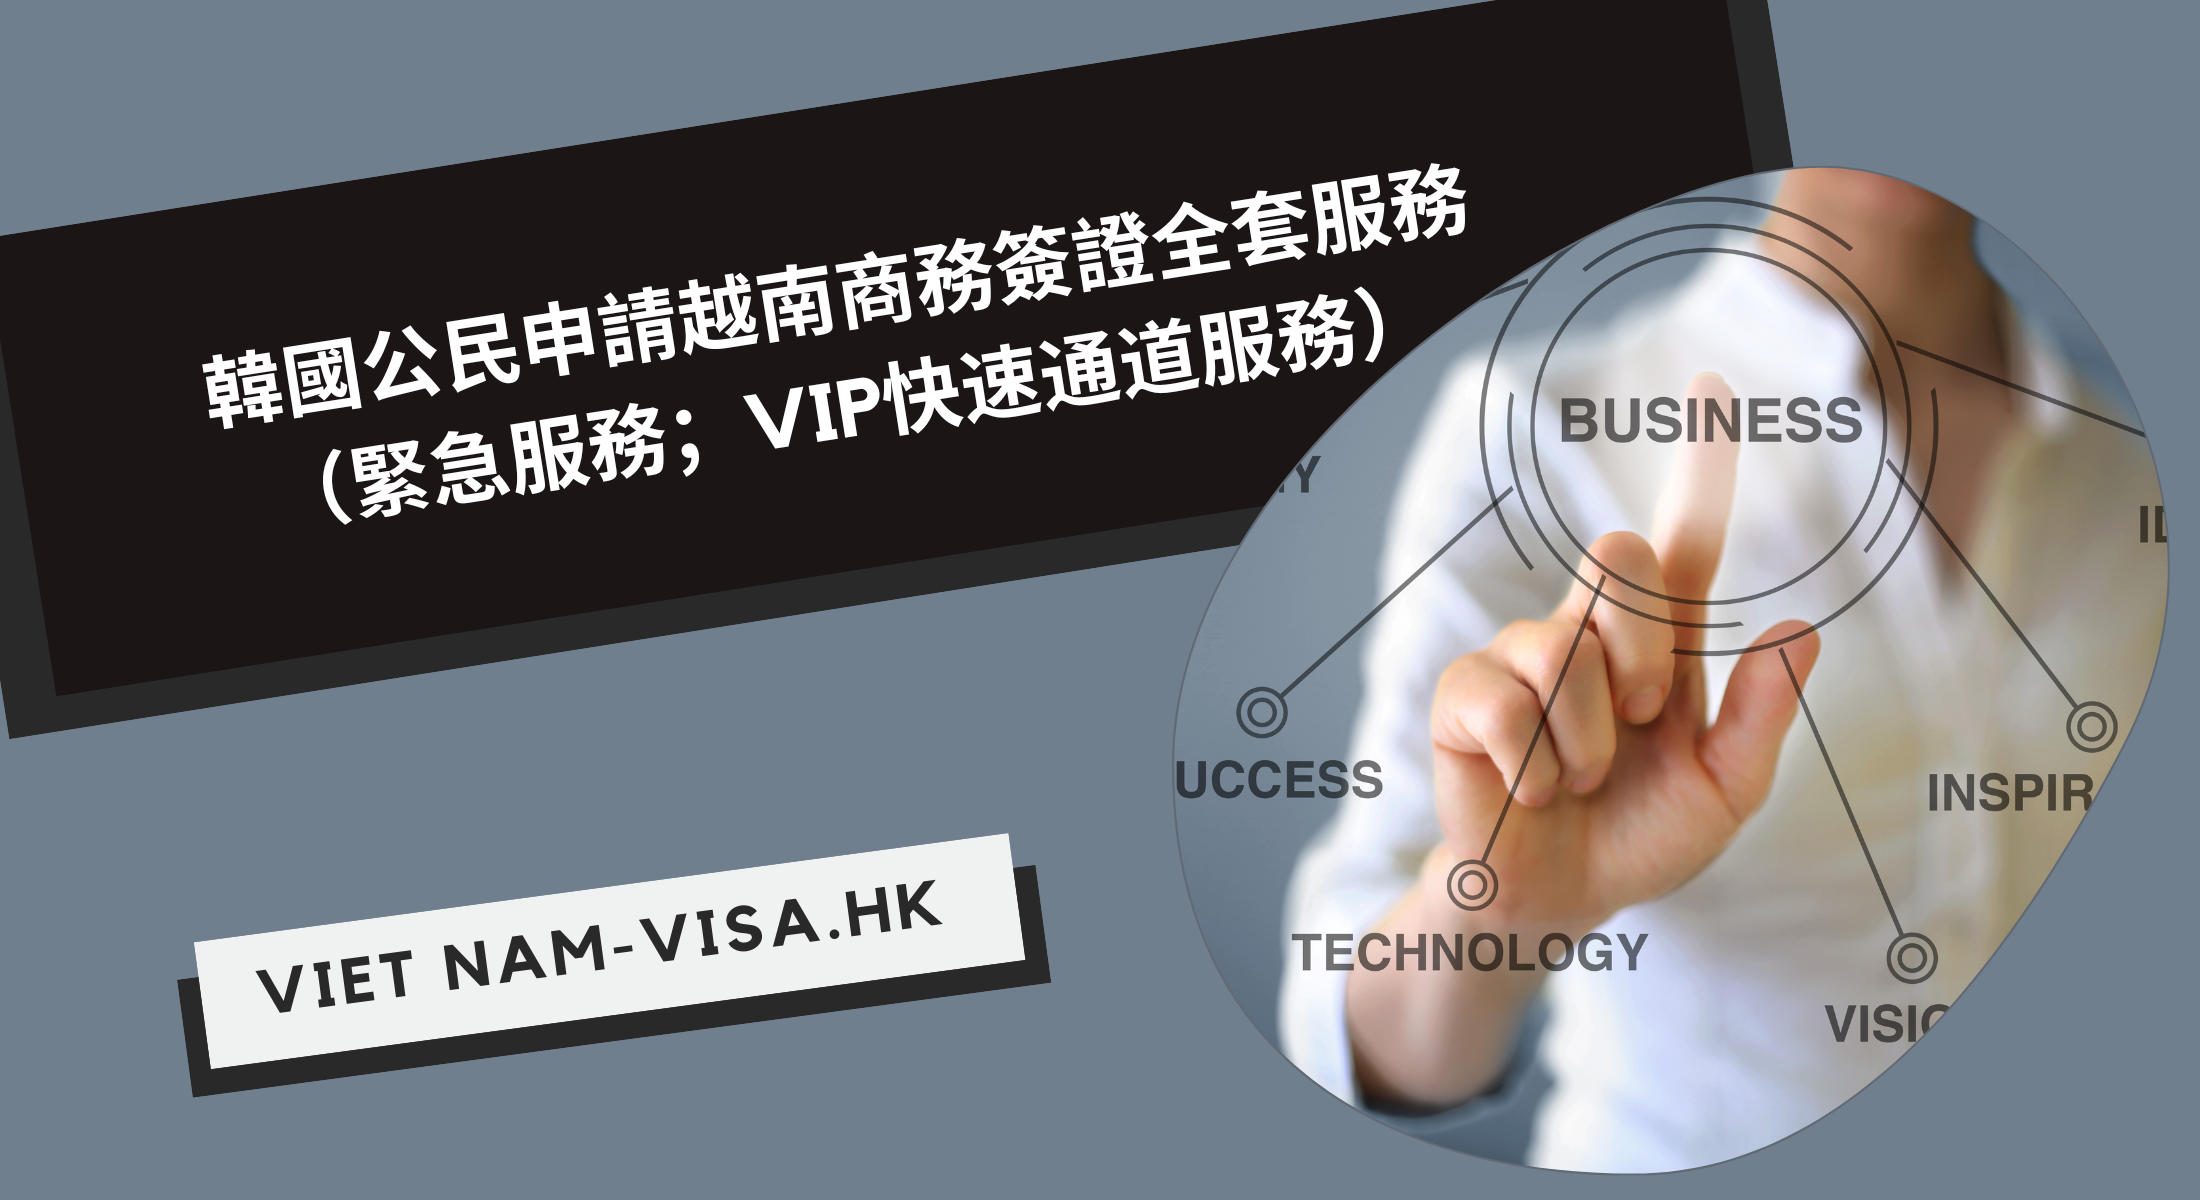 韓國公民申請越南商務簽證全套服務